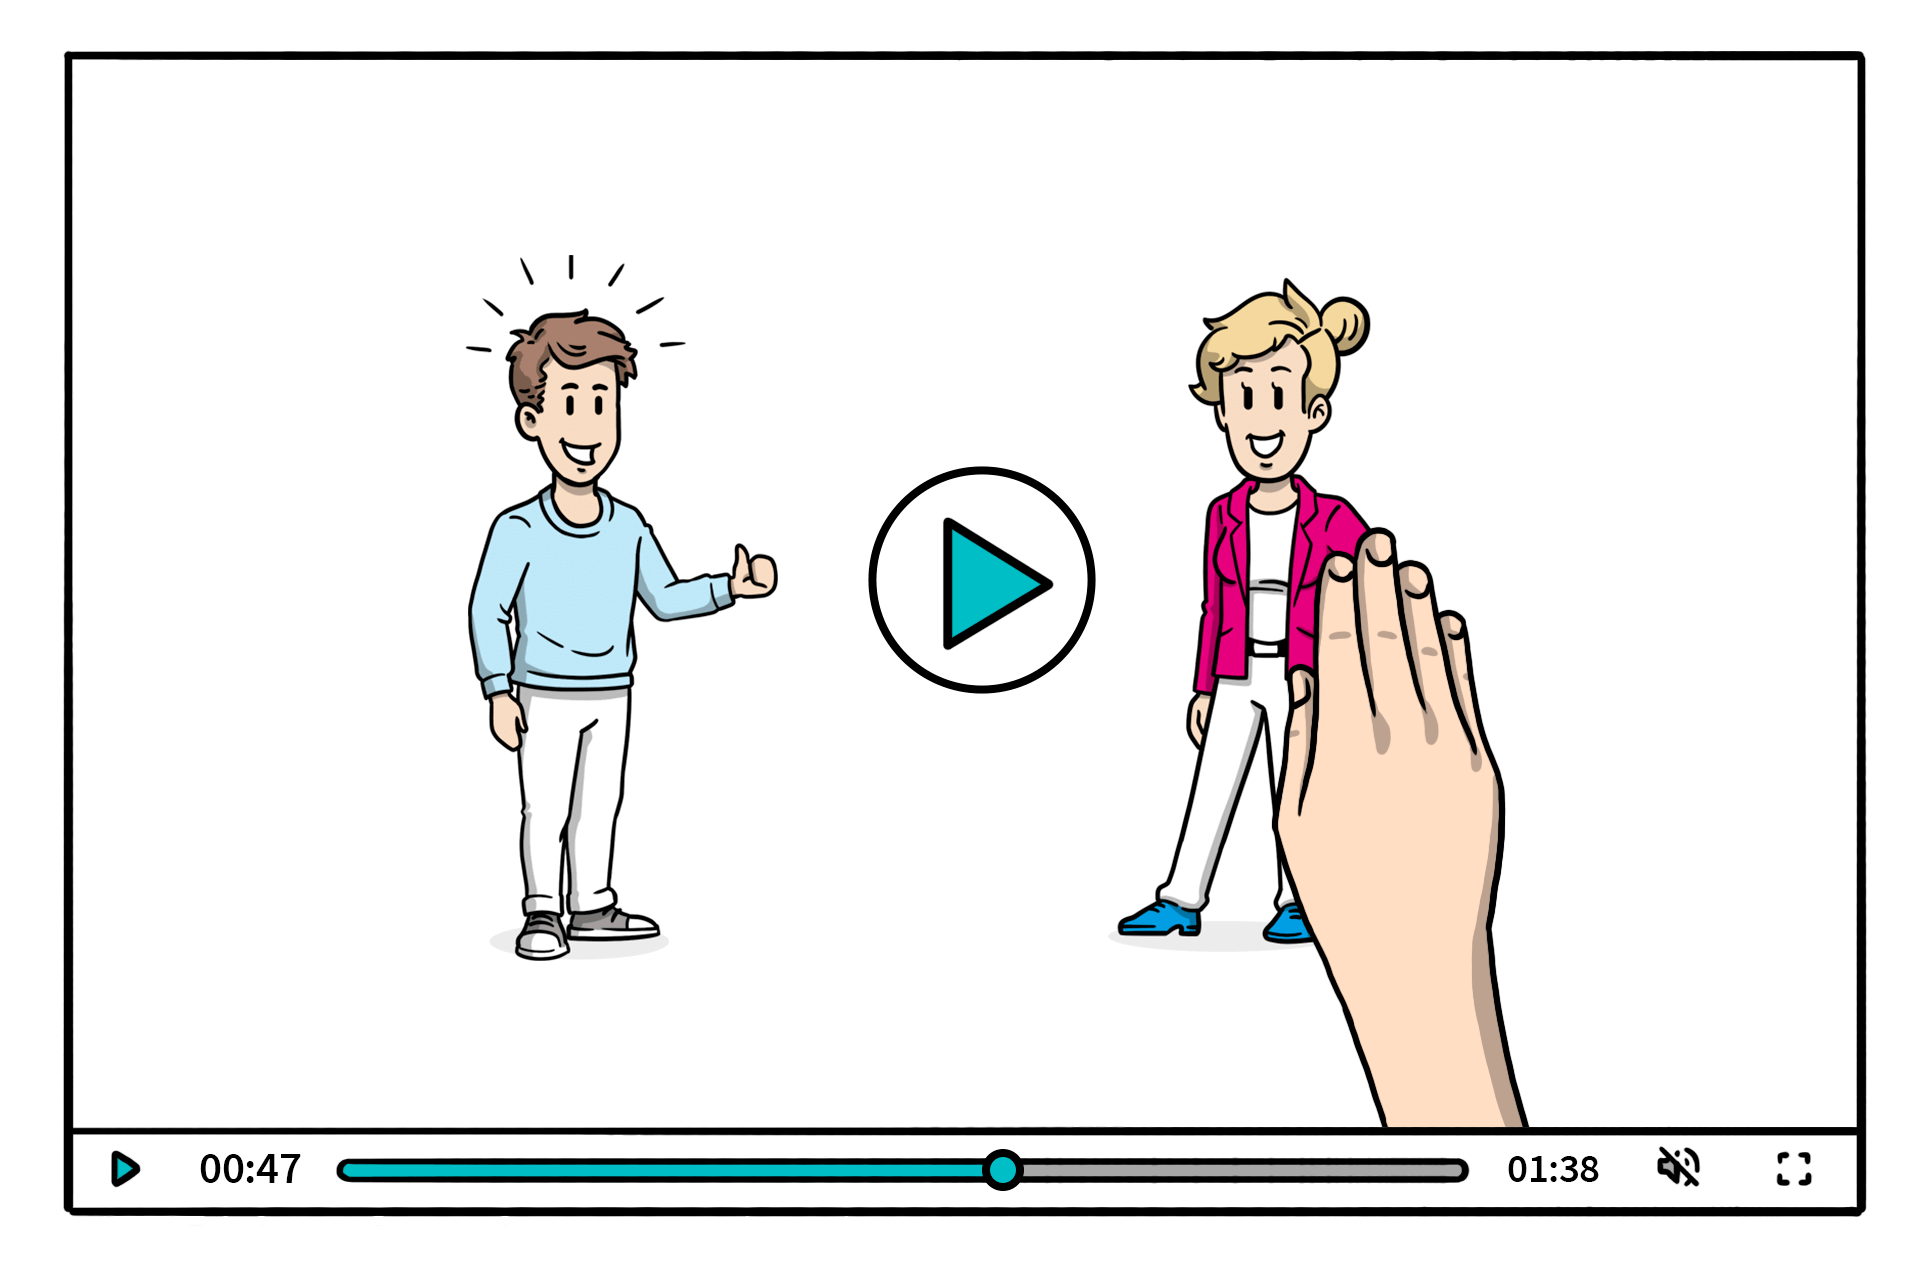 Eine Illustration eines Erklärvideos mit zwei Figuren, von denen eine von einer Hand auf dem Bildschirm platziert wird